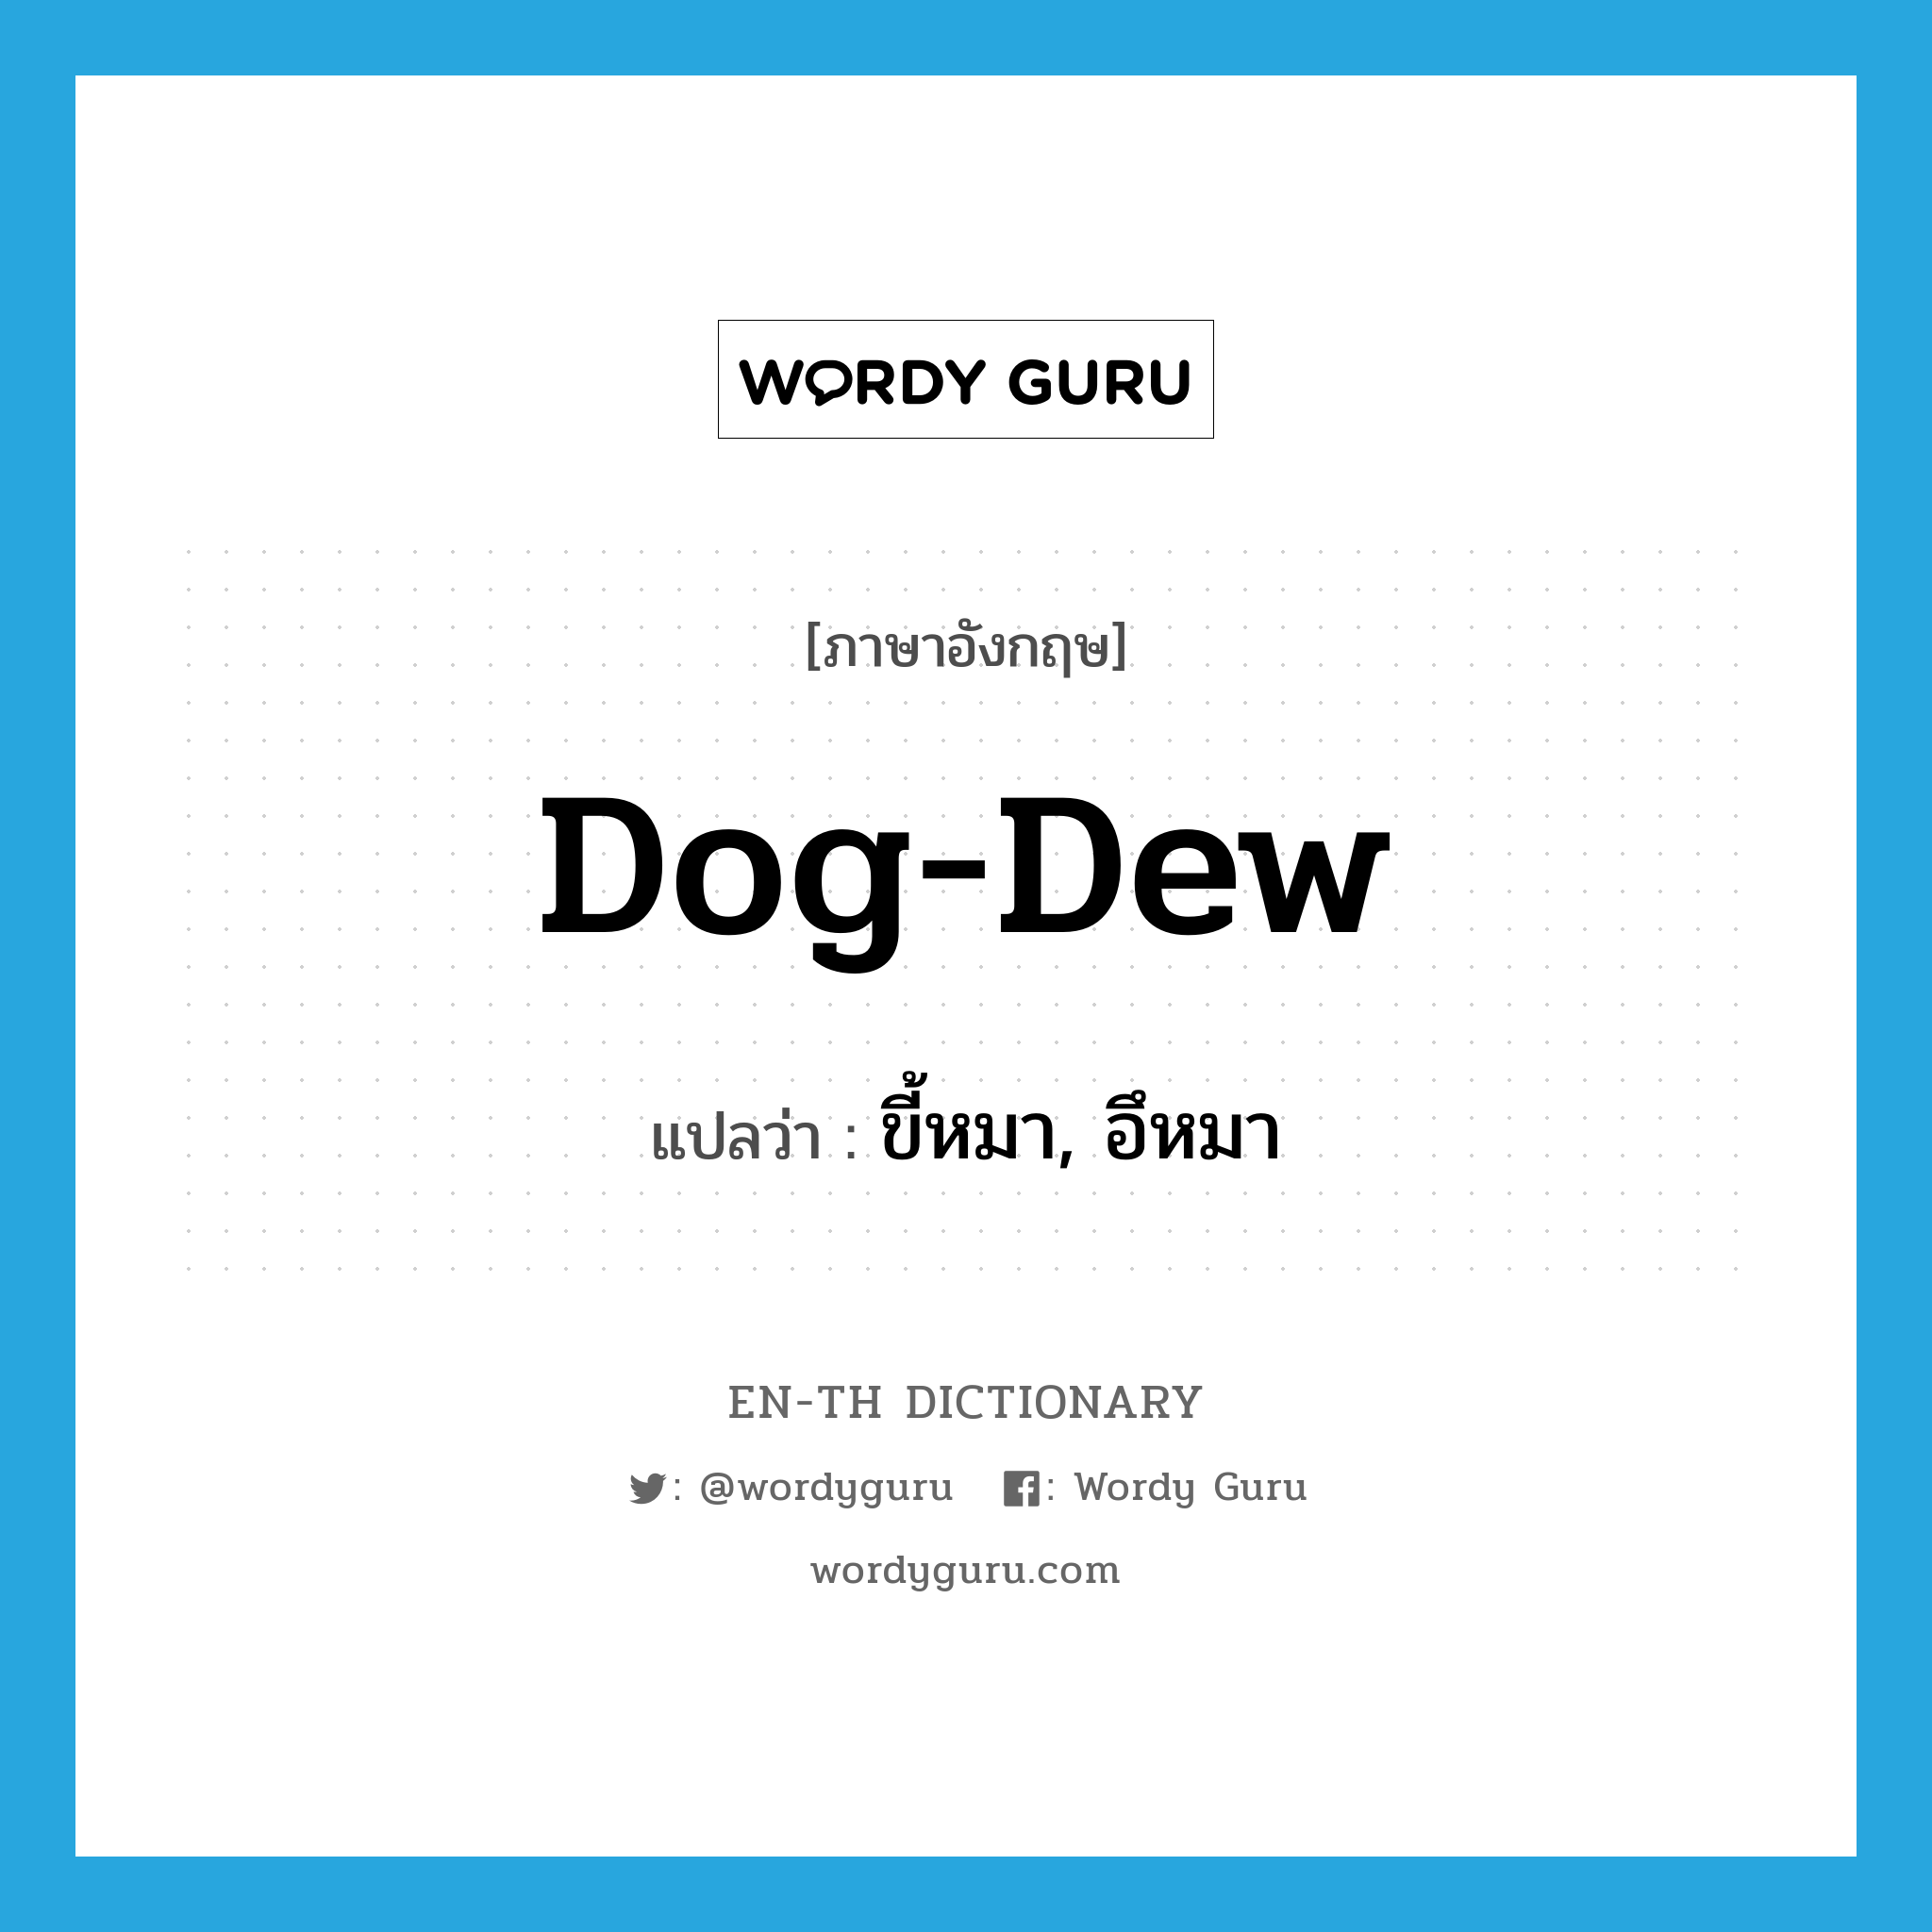 ขี้หมา, อึหมา ภาษาอังกฤษ?, คำศัพท์ภาษาอังกฤษ ขี้หมา, อึหมา แปลว่า dog-dew ประเภท SL หมวด SL